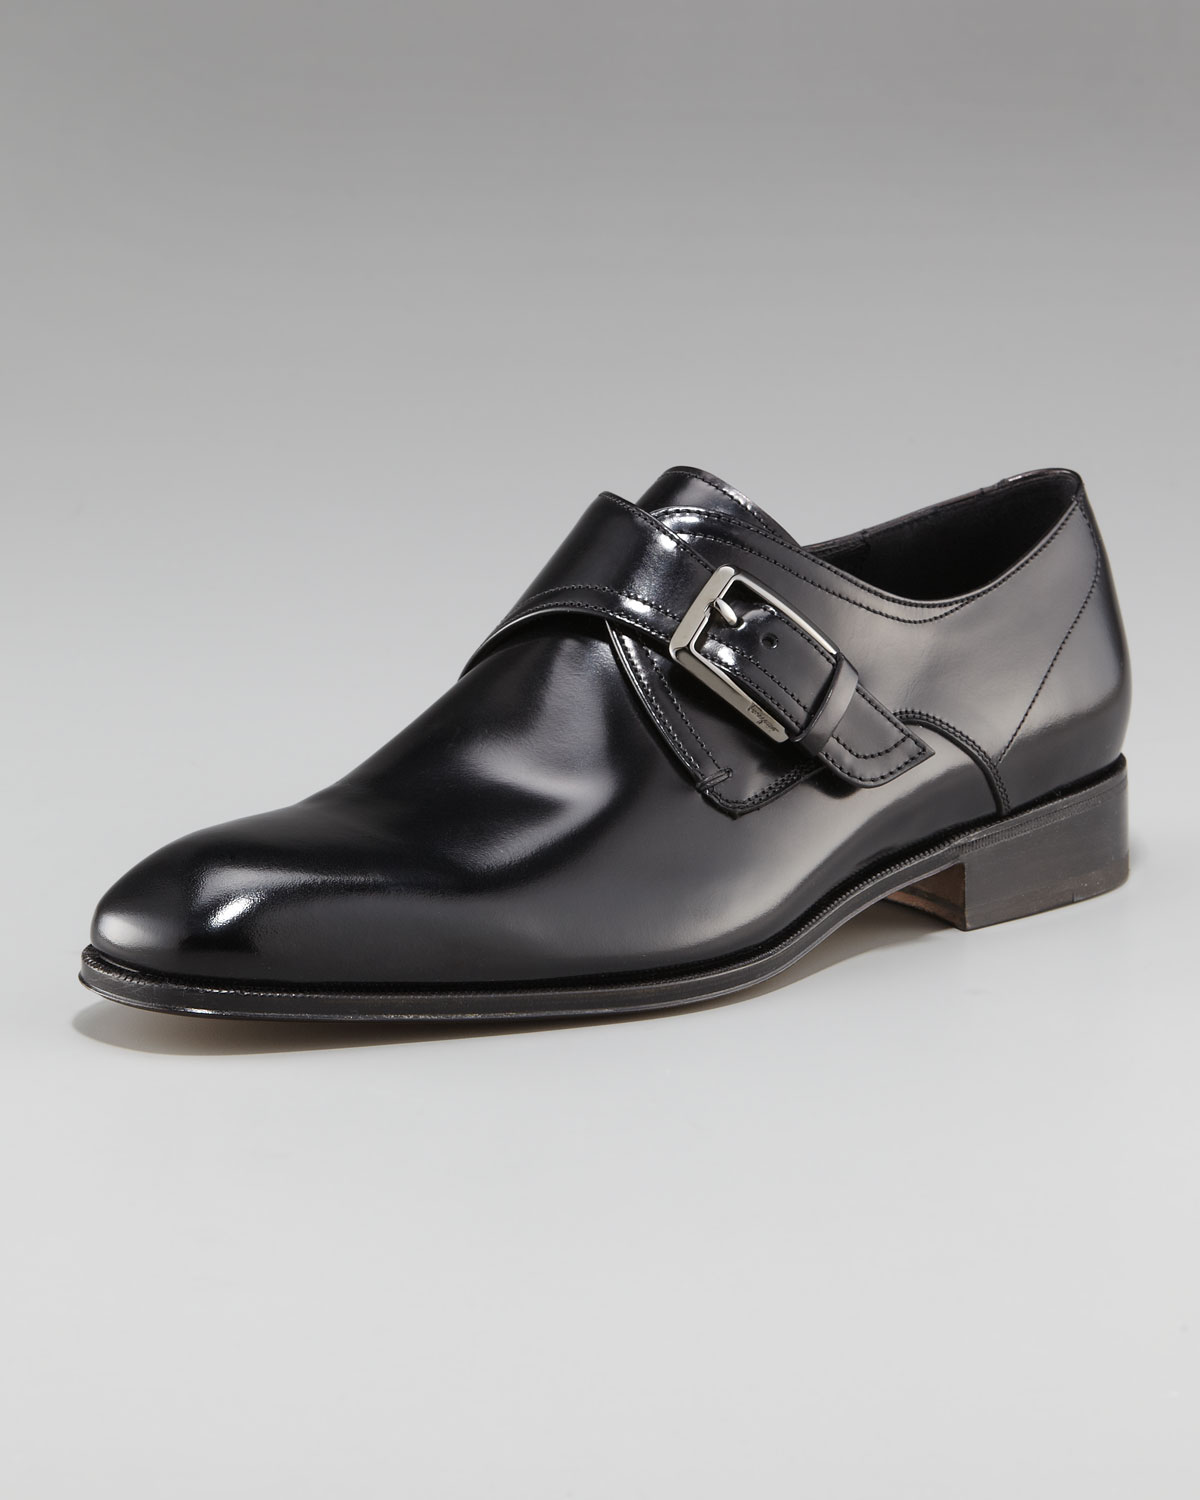 Ferragamo Monk Strap Shoes Online Sale, UP TO 65% OFF